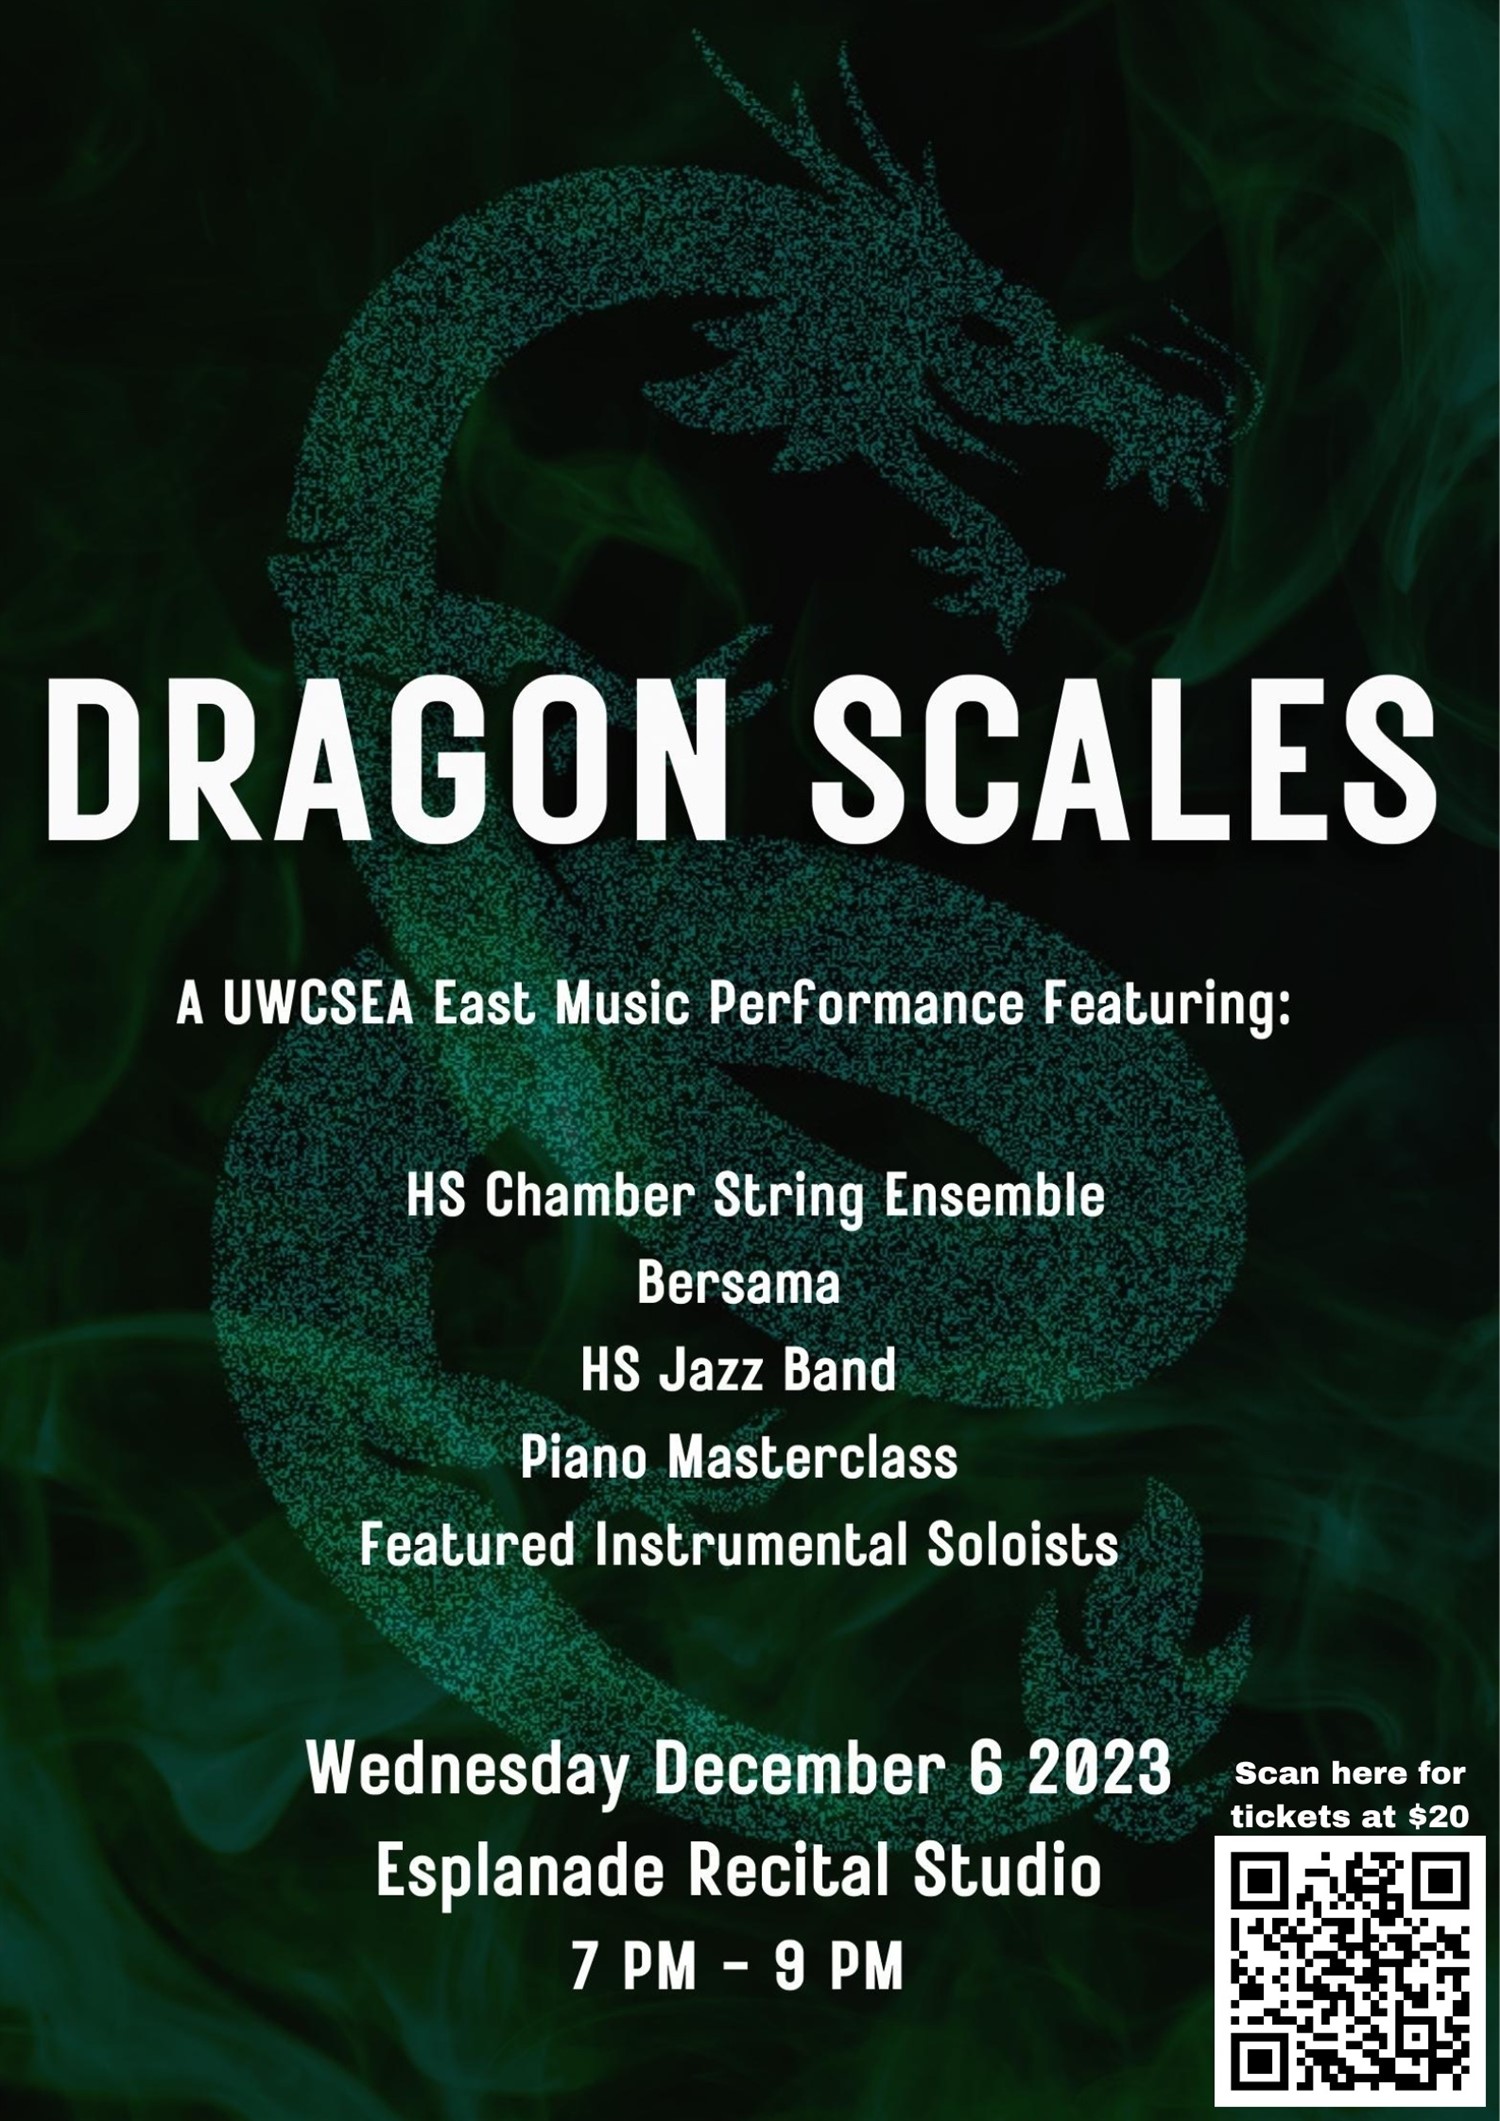 UWCSEA East Music Presents - Dragon Scales  on Dec 06, 19:00@Esplanade Recital Studio - Buy tickets and Get information on UWCSEA Ticket Hub uwcsea